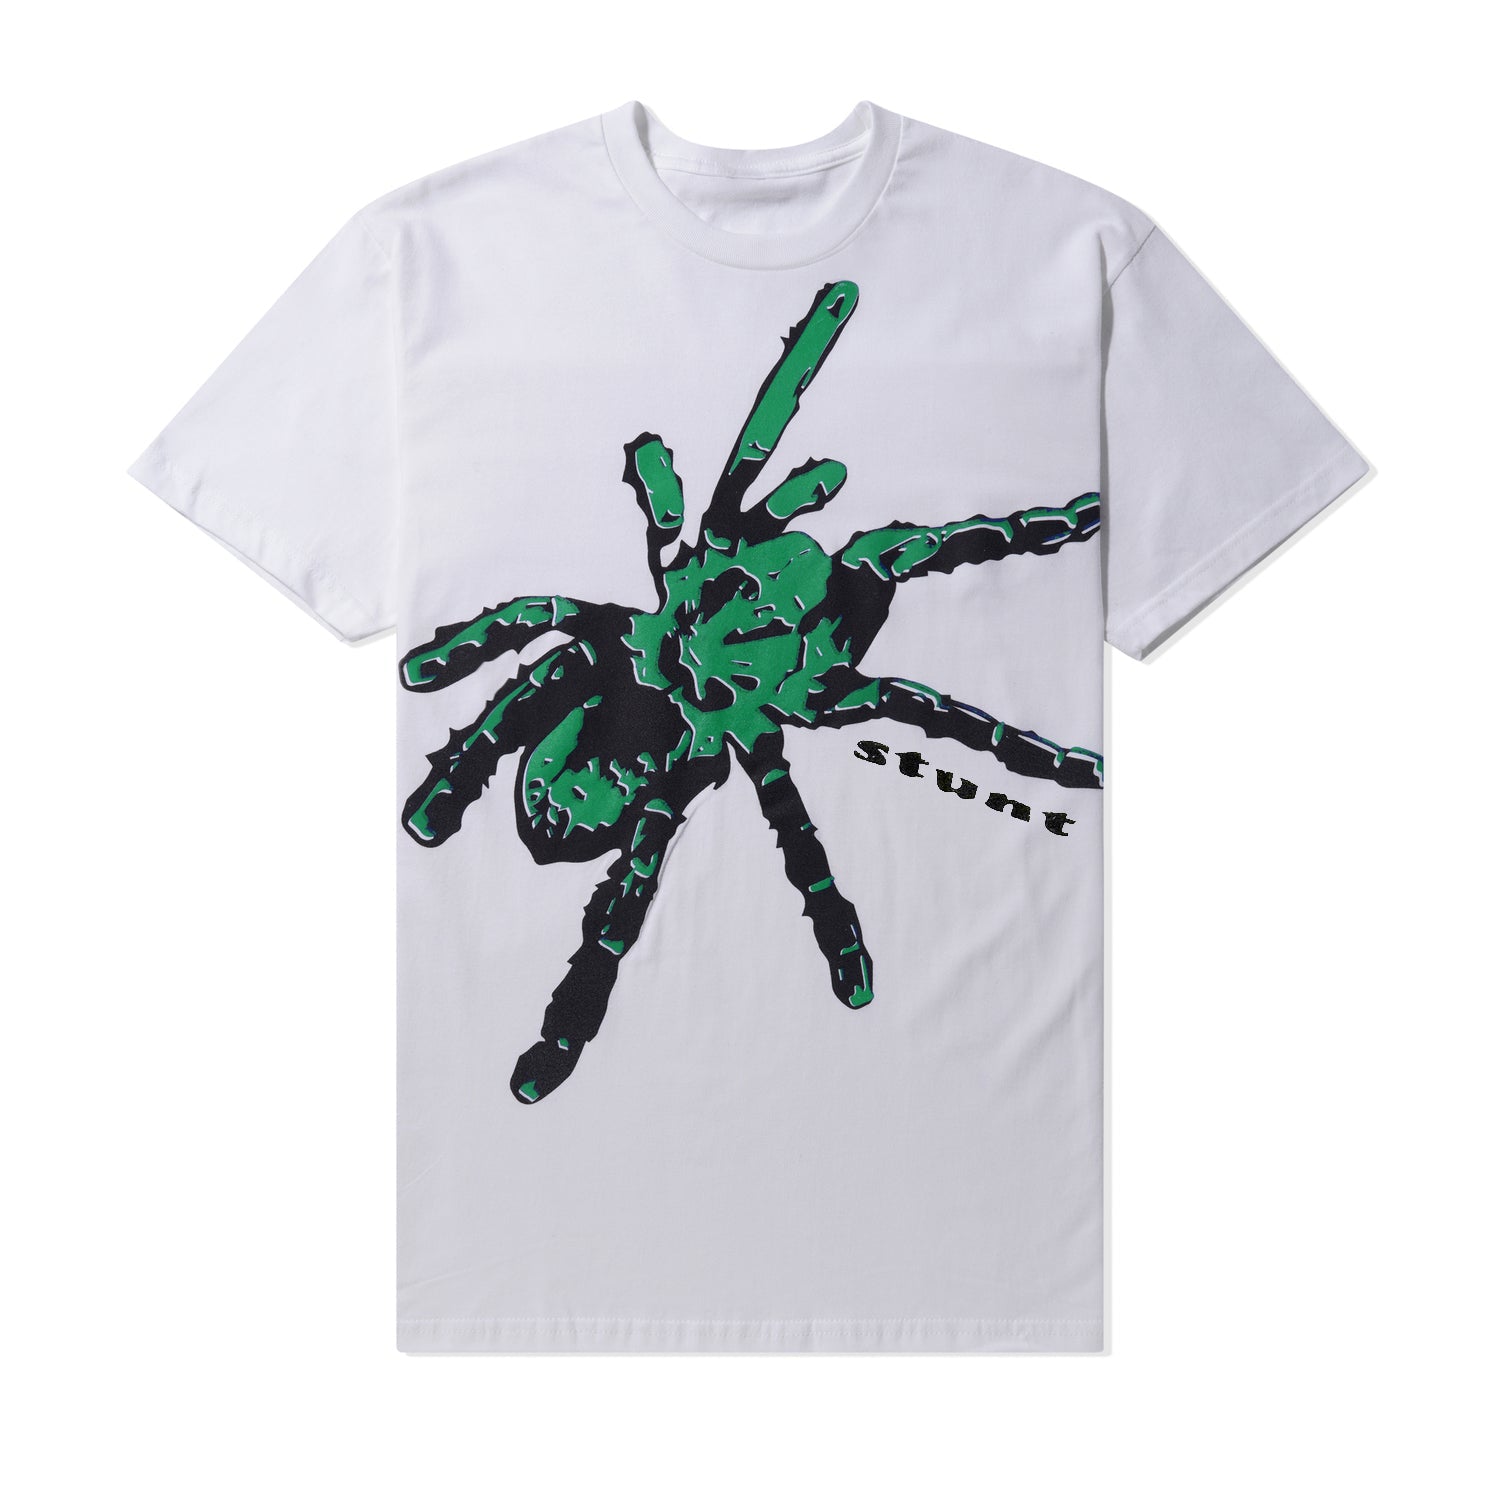 Giant Tarantula Tee, White / Green